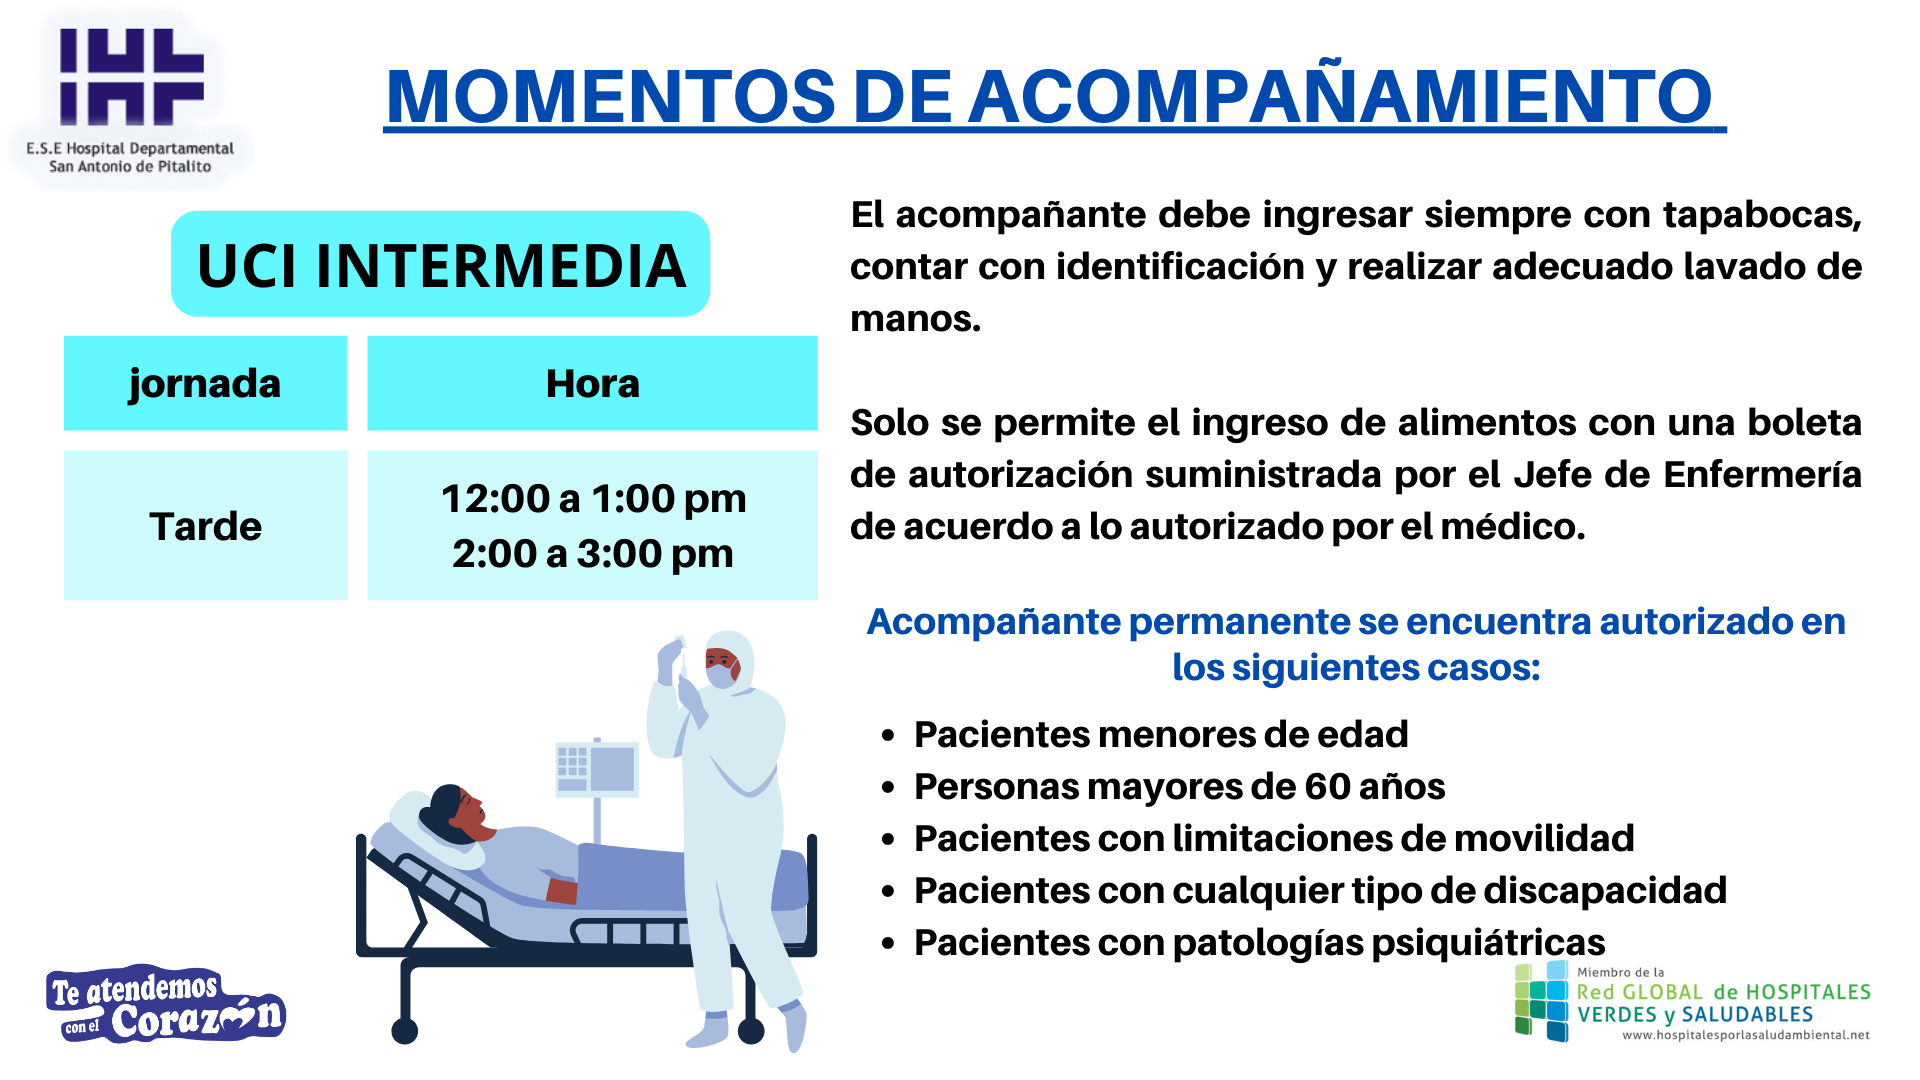 Momentos De Acompañamiento Hospitalización UCI Intermedia